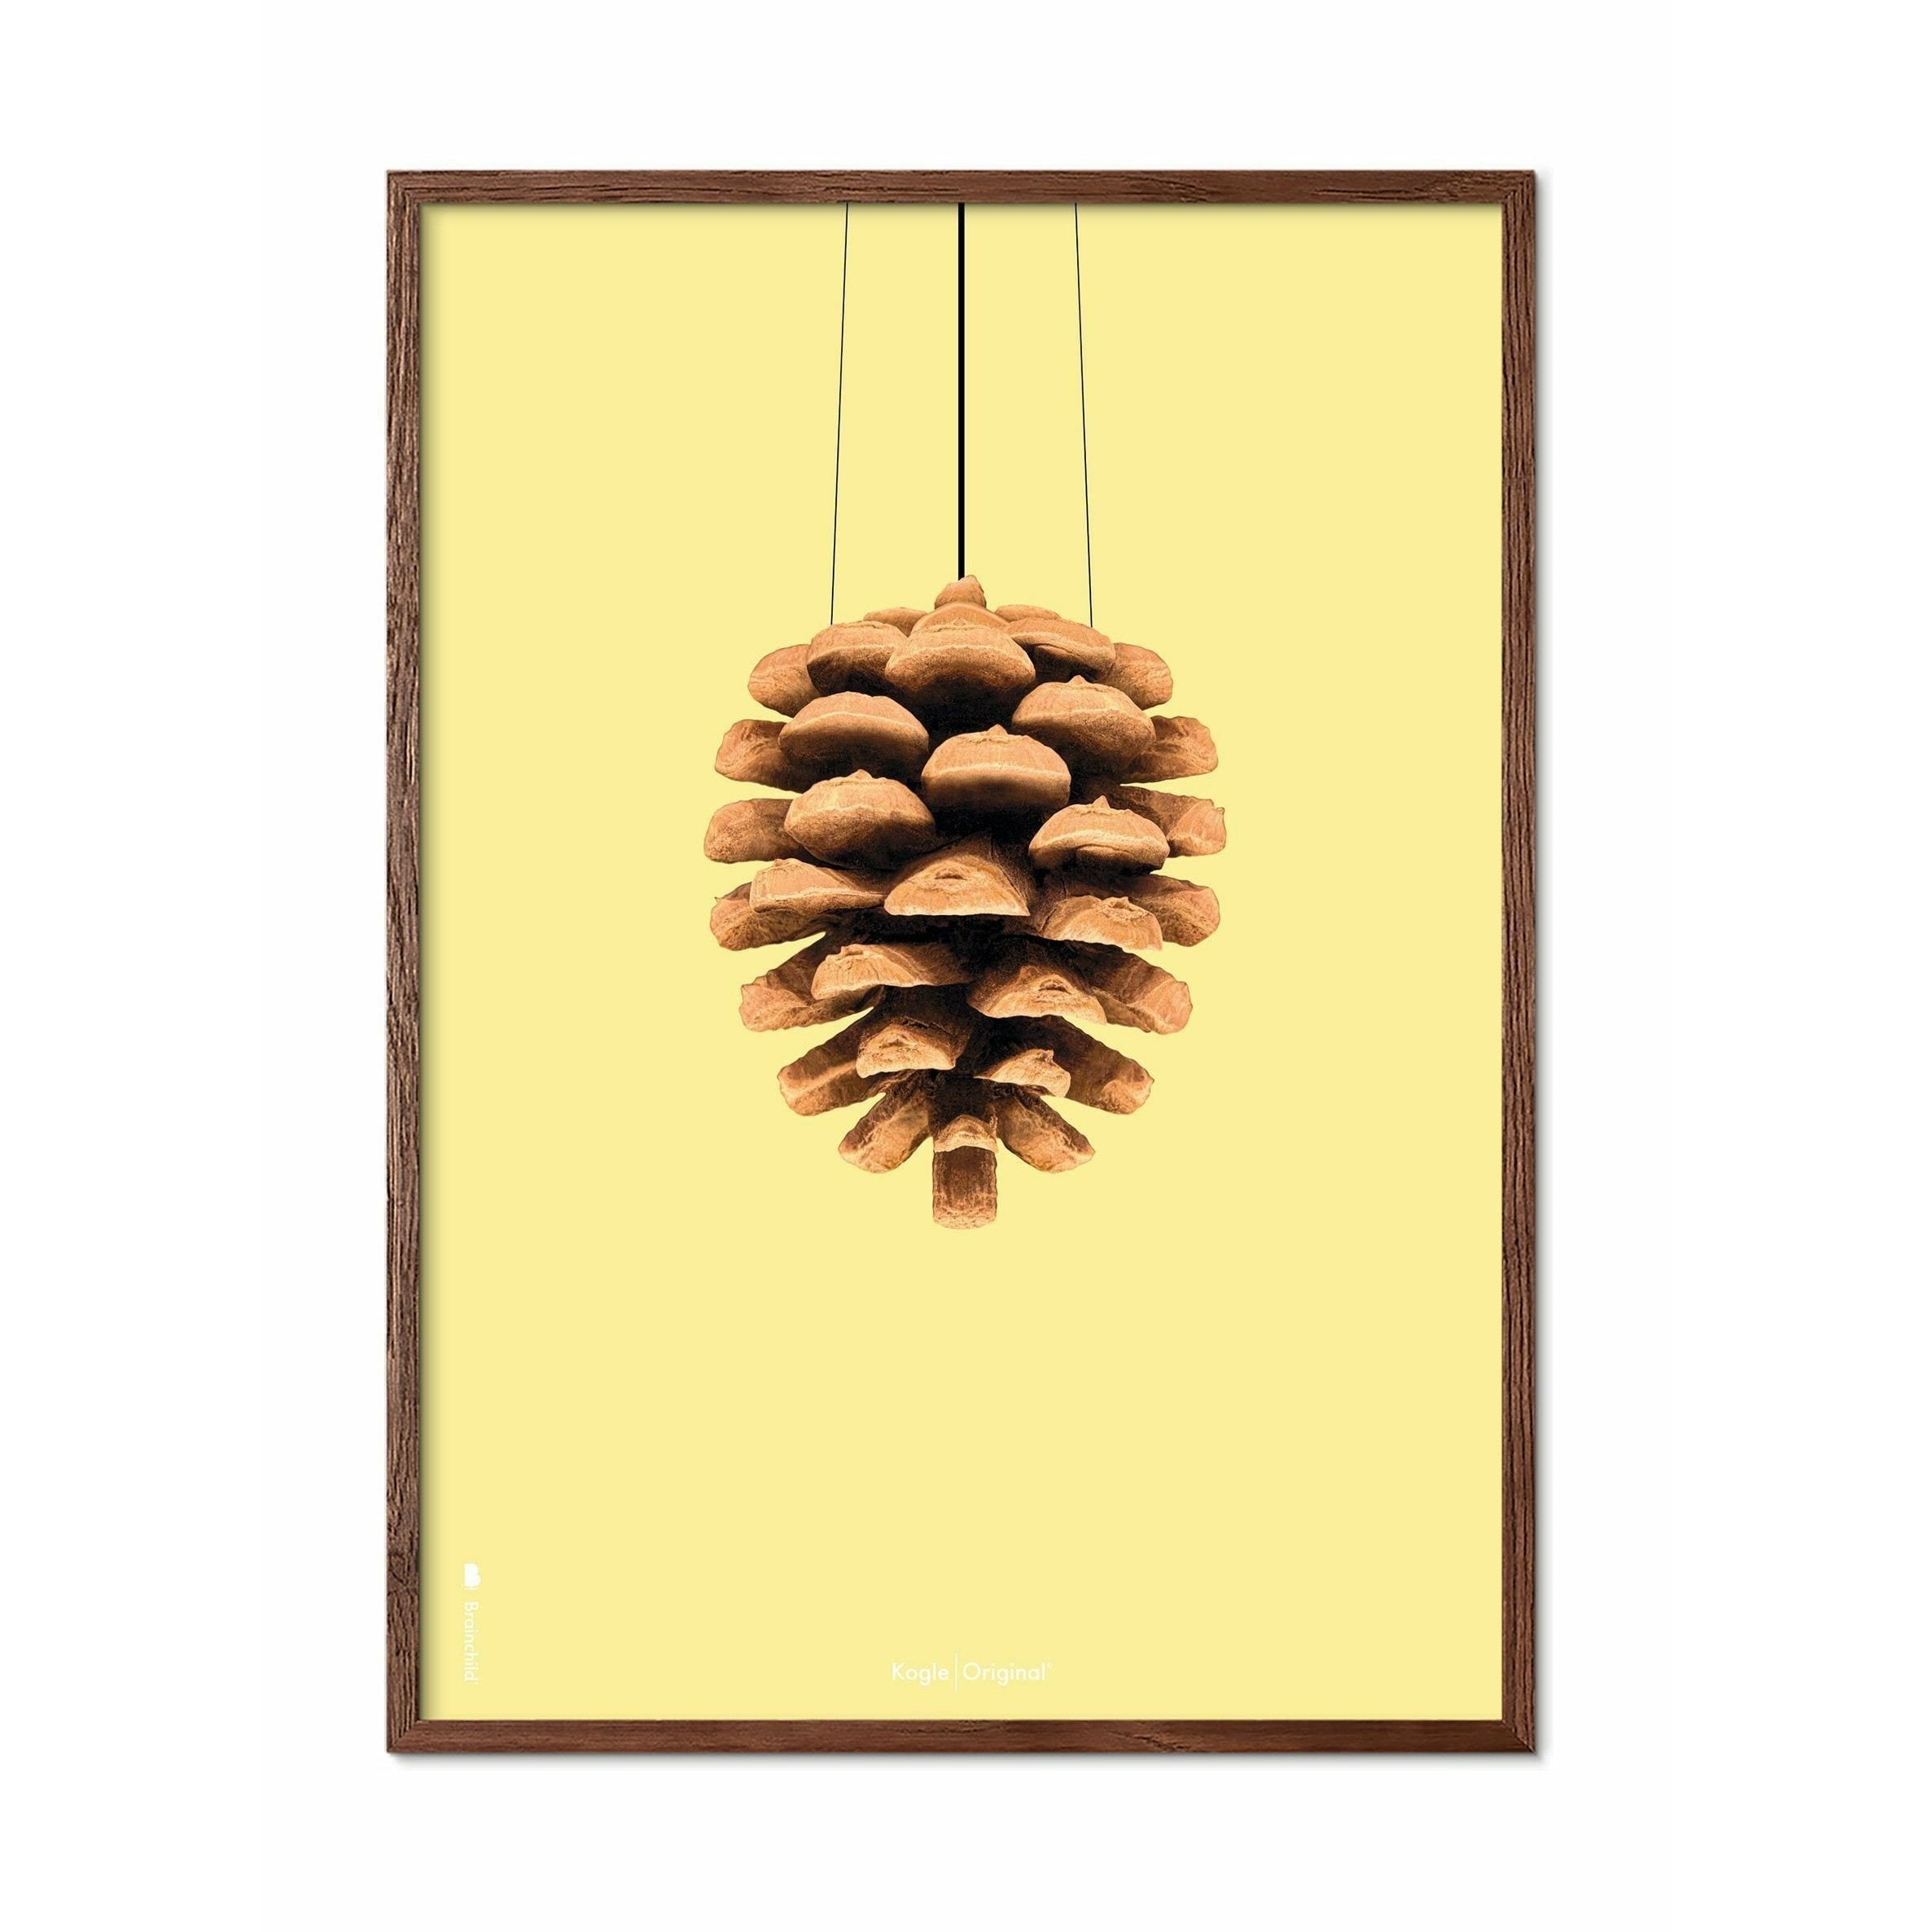 Póster clásico de cono de pino de creación, marco hecho de madera oscura 30x40 cm, fondo amarillo